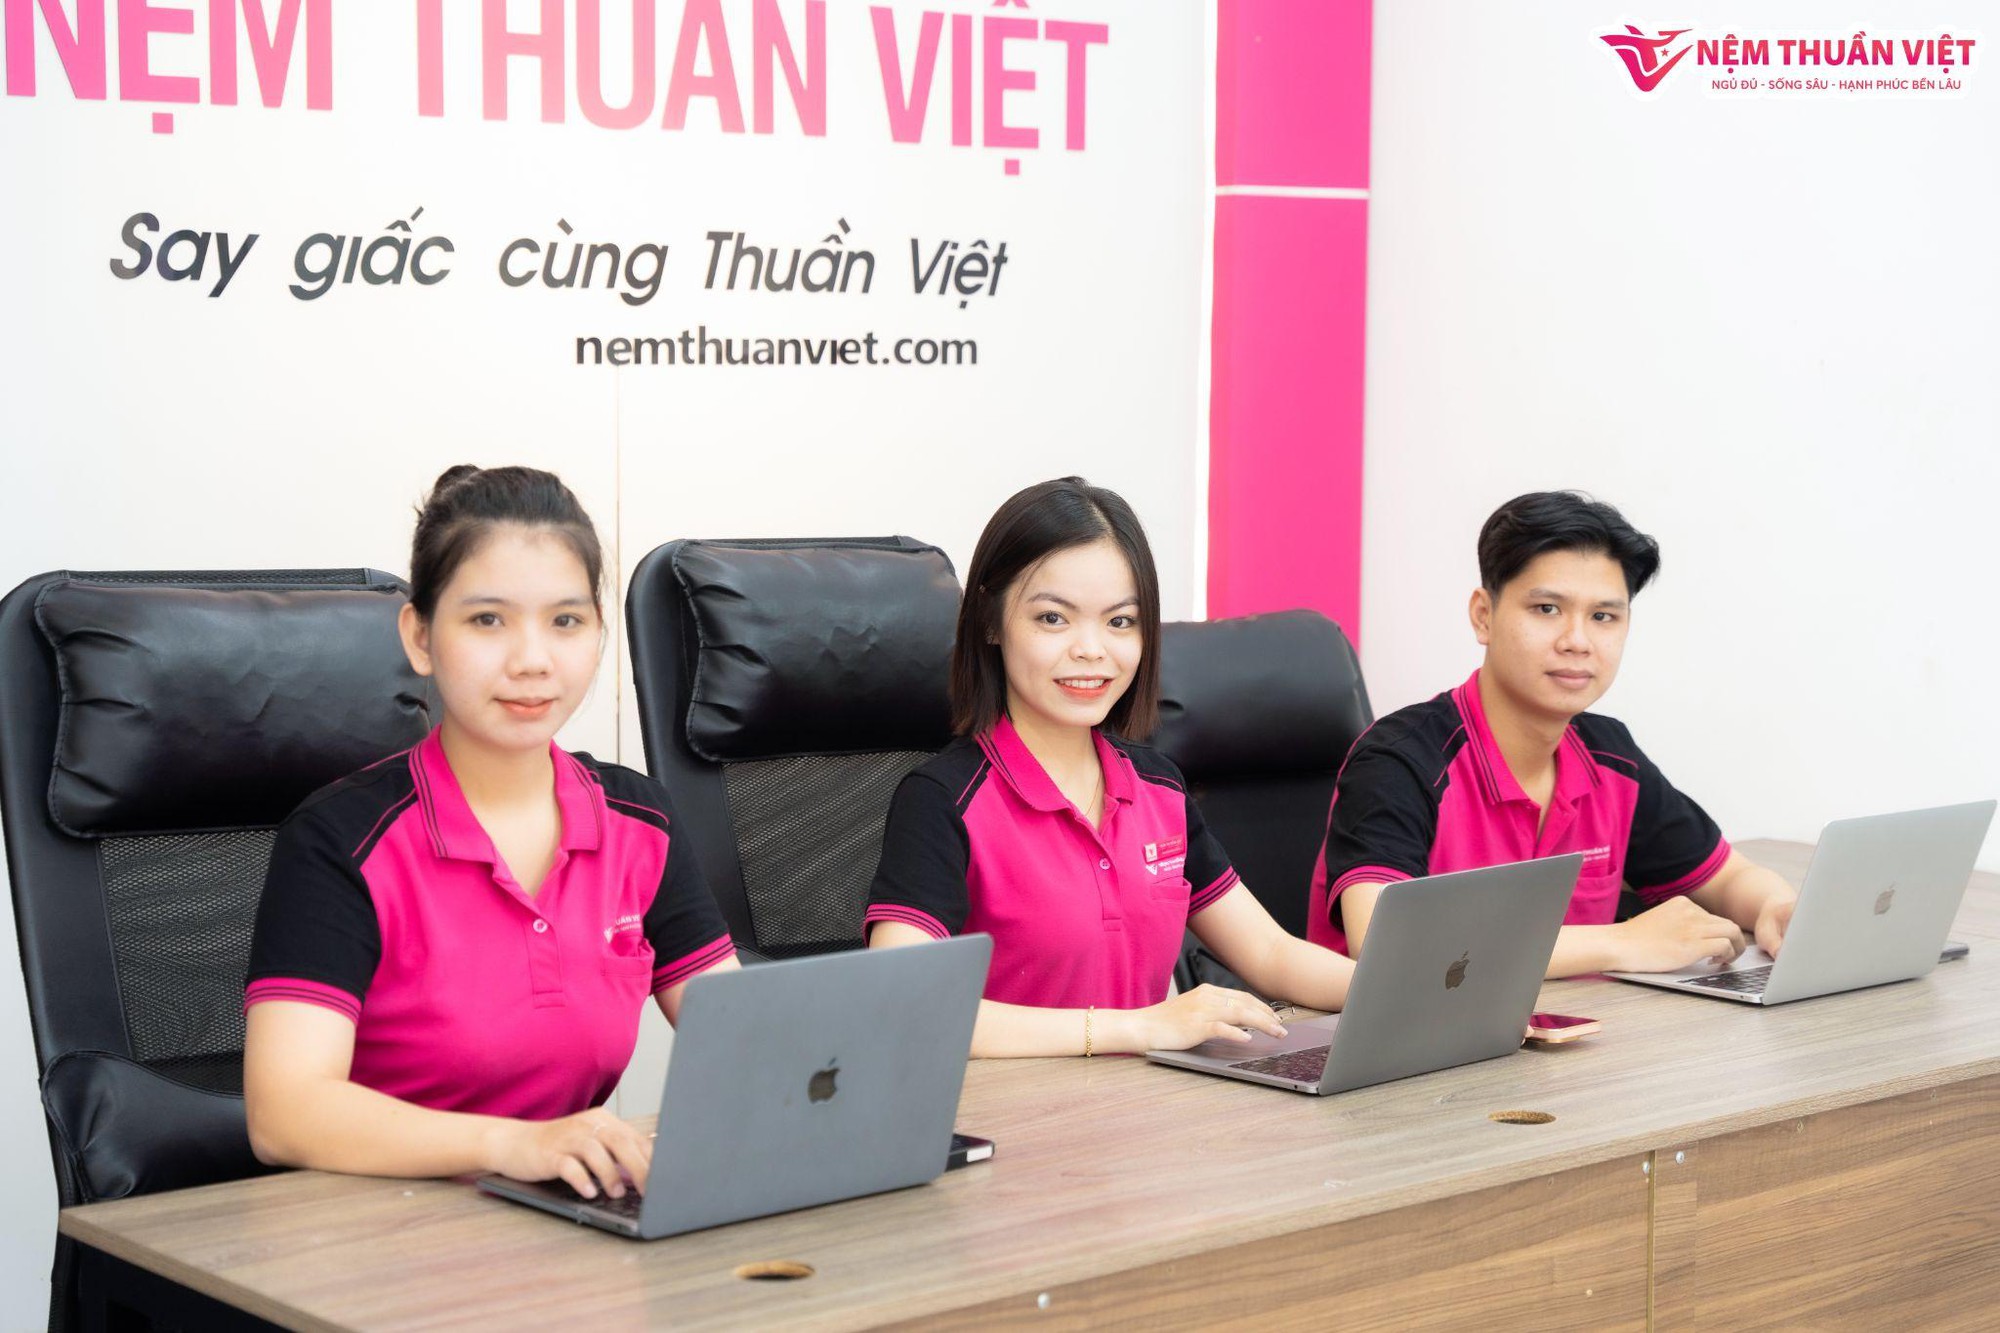 Nệm Thuần Việt sở hữu ban lãnh đạo đầy tài năng với CEO chỉ mới 26 tuổi - Ảnh 5.